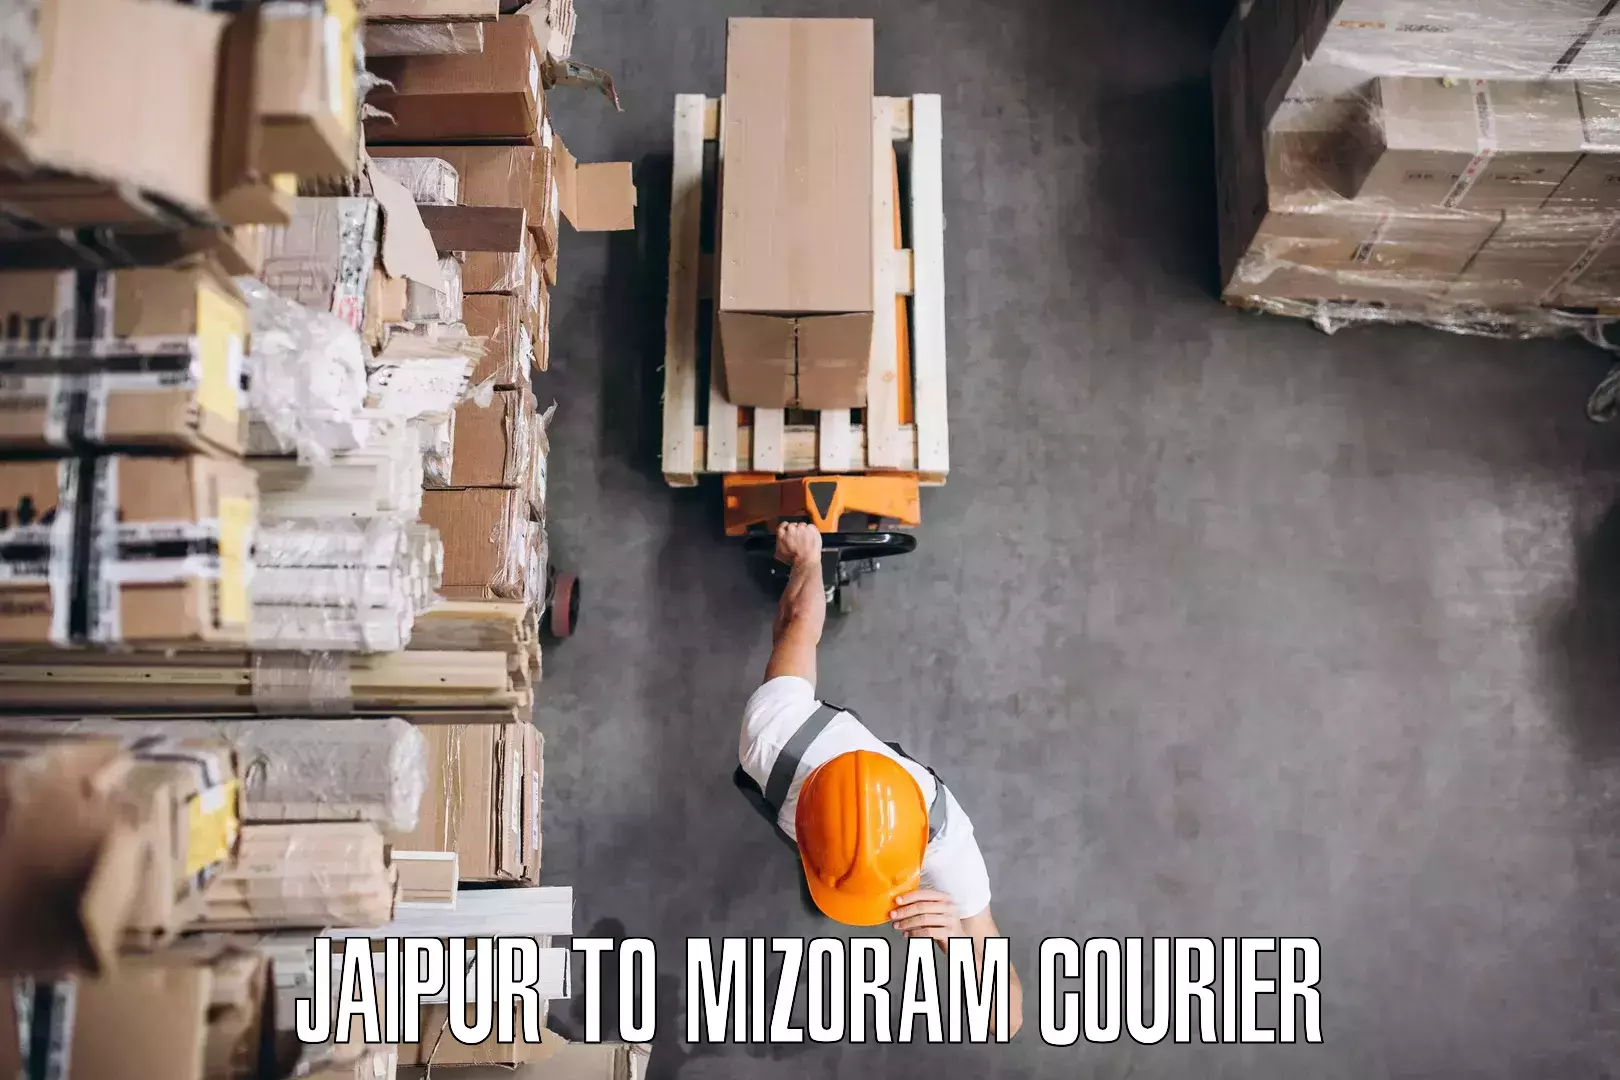 Furniture moving experts Jaipur to Mizoram